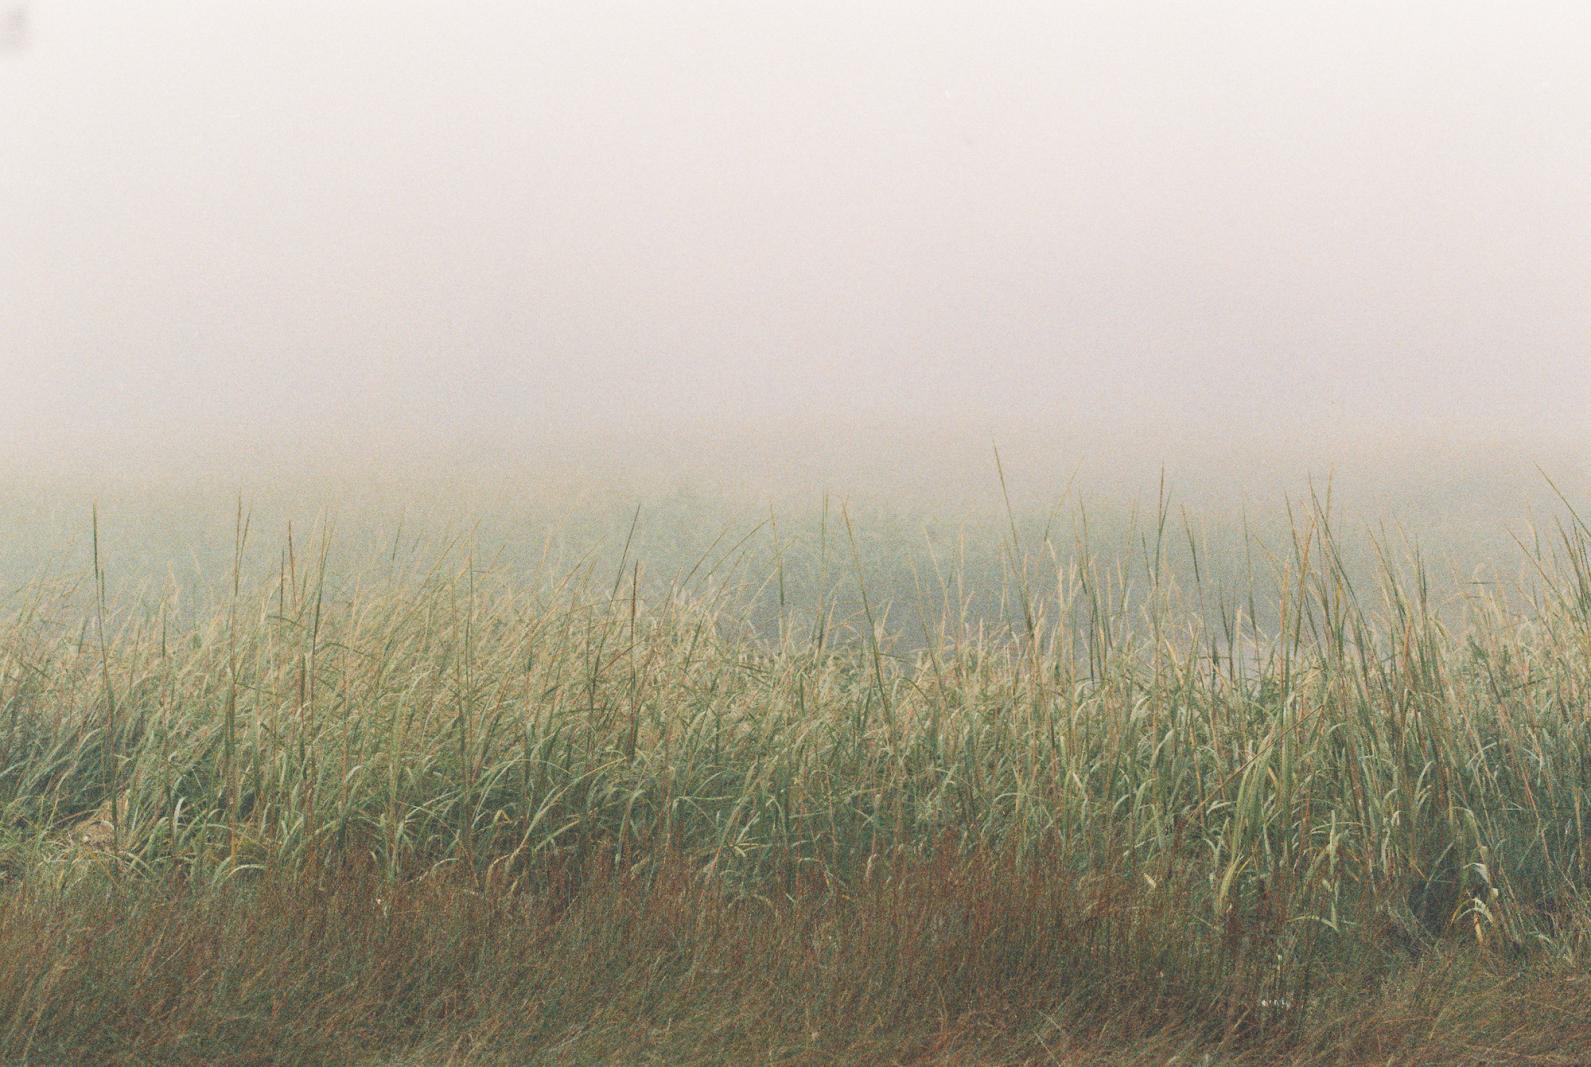 film scan of reeds in fog